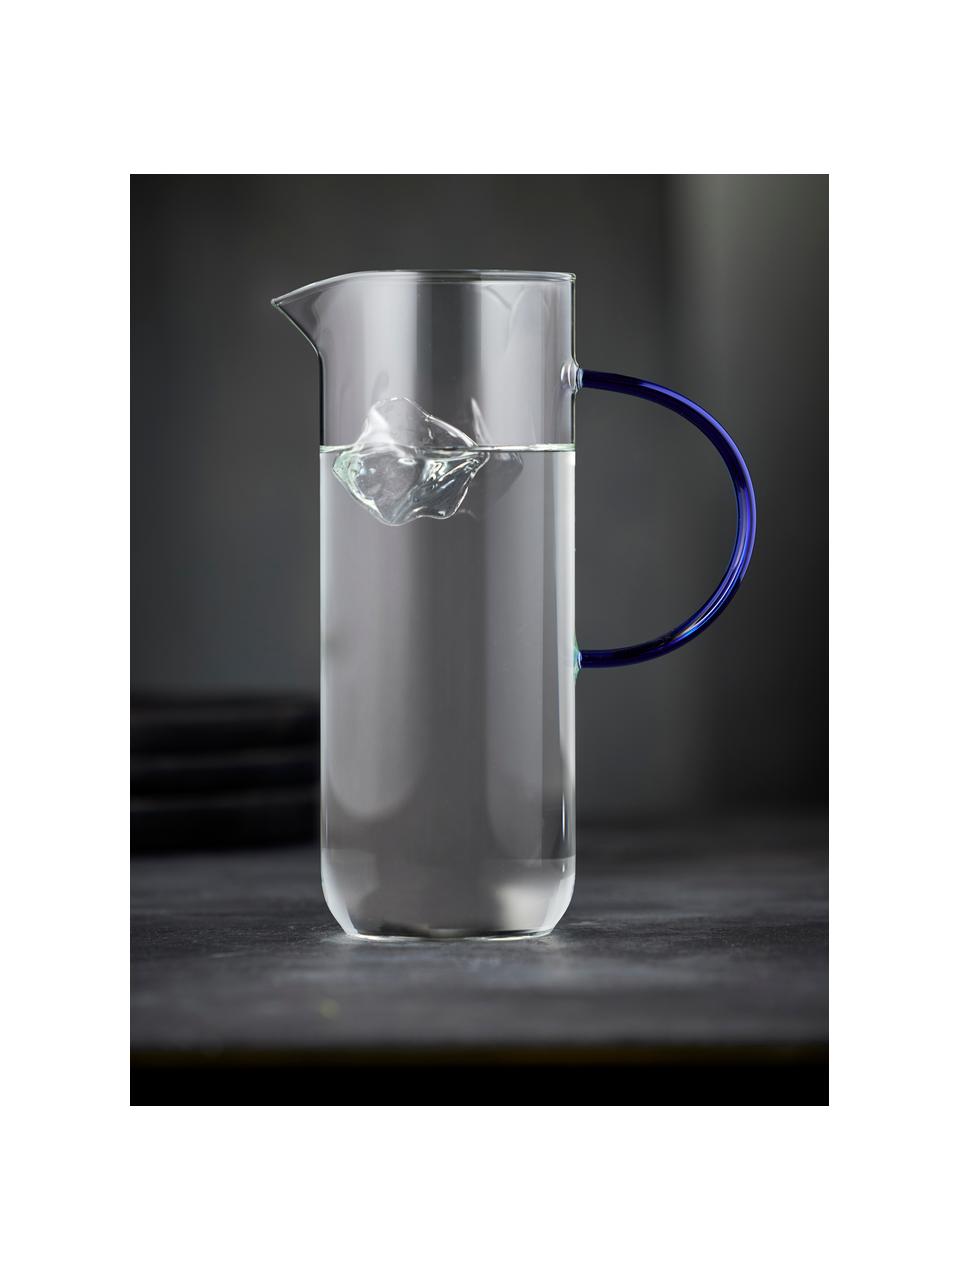 Wasserkaraffe Torino aus Borosilikatglas, 1.1 L, Borosilikatglas

Entdecke die Vielseitigkeit von Borosilikatglas für Dein Zuhause! Borosilikatglas ist ein hochwertiges, zuverlässiges und robustes Material. Es zeichnet sich durch seine außergewöhnliche Hitzebeständigkeit aus und ist daher ideal für Deinen heißen Tee oder Kaffee. Im Vergleich zu herkömmlichem Glas ist Borosilikatglas widerstandsfähiger gegen Brüche und Risse und somit ein sicherer Begleiter in Deinem Zuhause., Transparent, Royalblau, 1.1 L